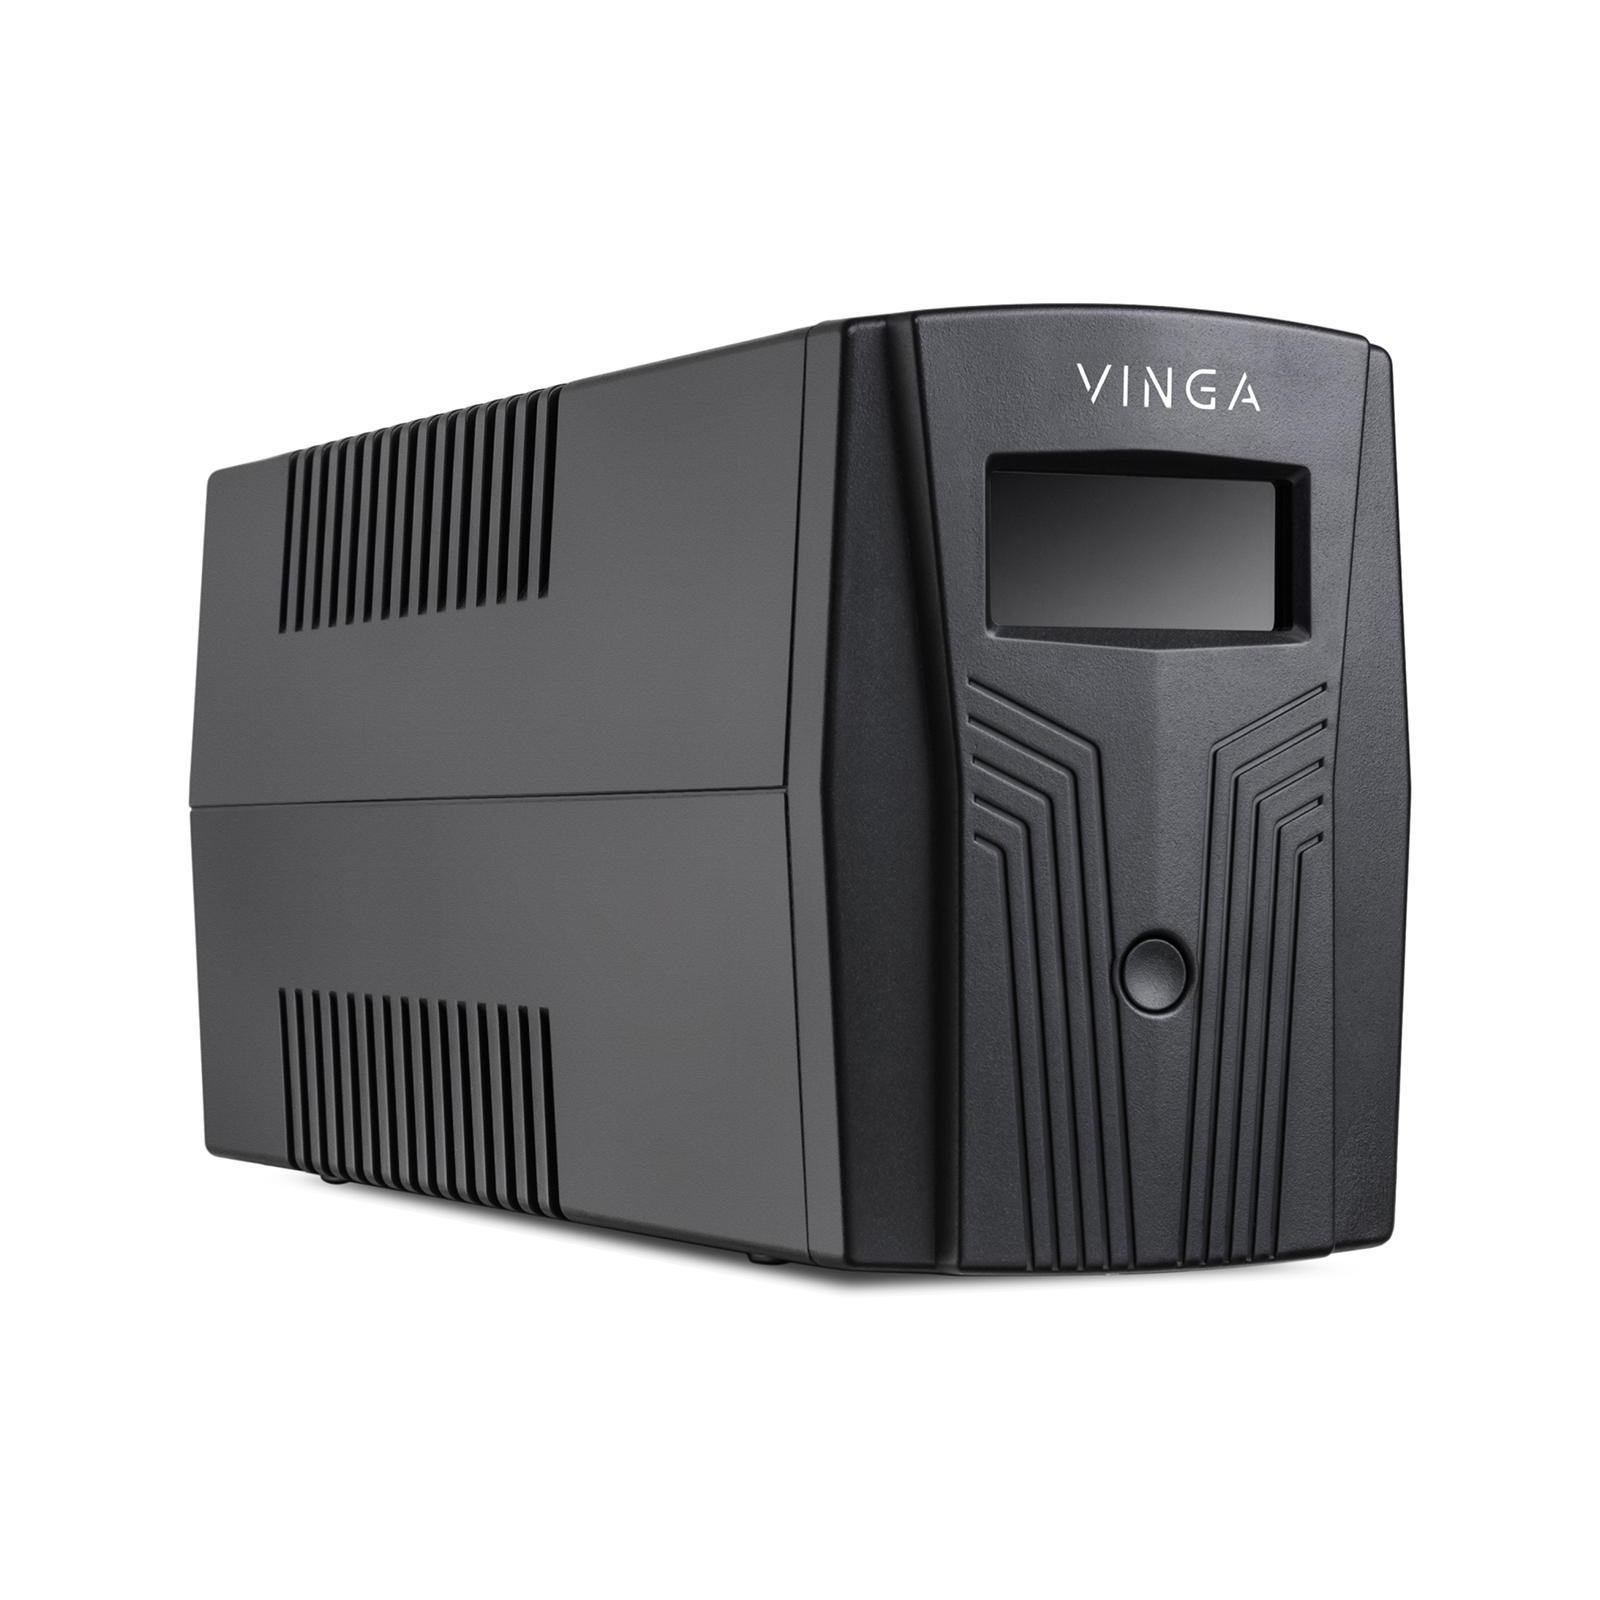 Источник бесперебойного питания Vinga LCD 600VA plastic case with USB (VPC-600PU) изображение 6